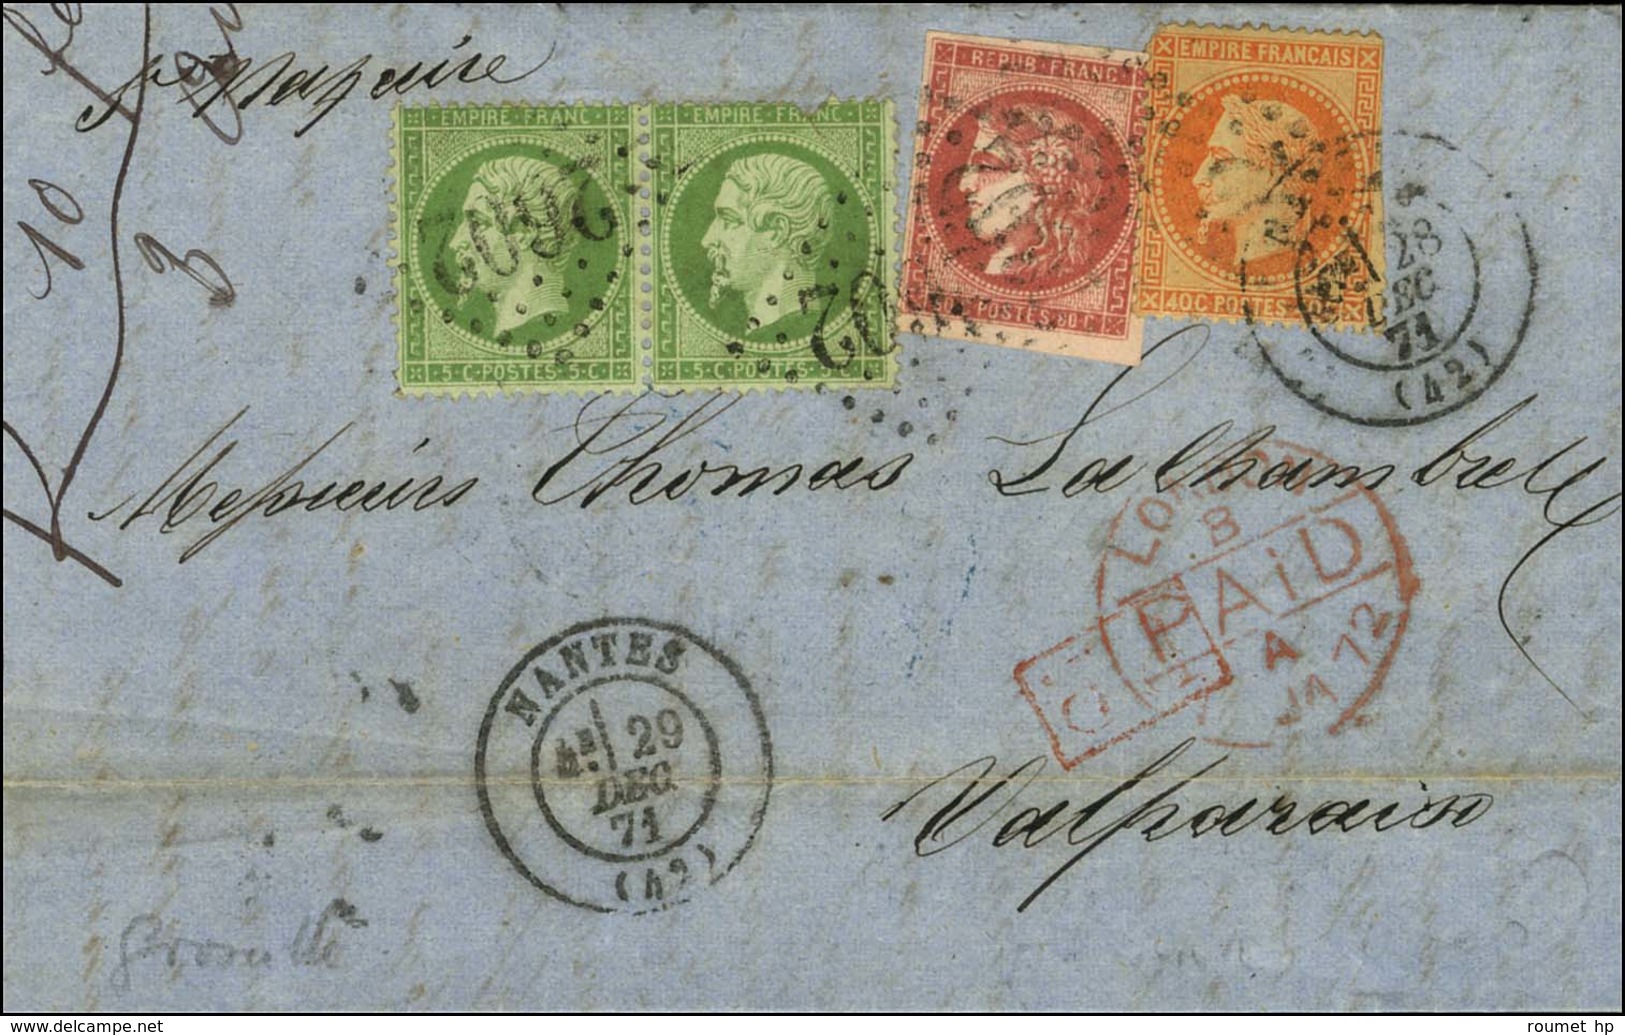 GC 2602 / N° 20 Paire + 31 (pd) + 49 Nuance Groseille Càd T 17 NANTES (42) 28 Et 29 DEC. 71 Sur Lettre Pour Valparaiso.  - 1870 Bordeaux Printing